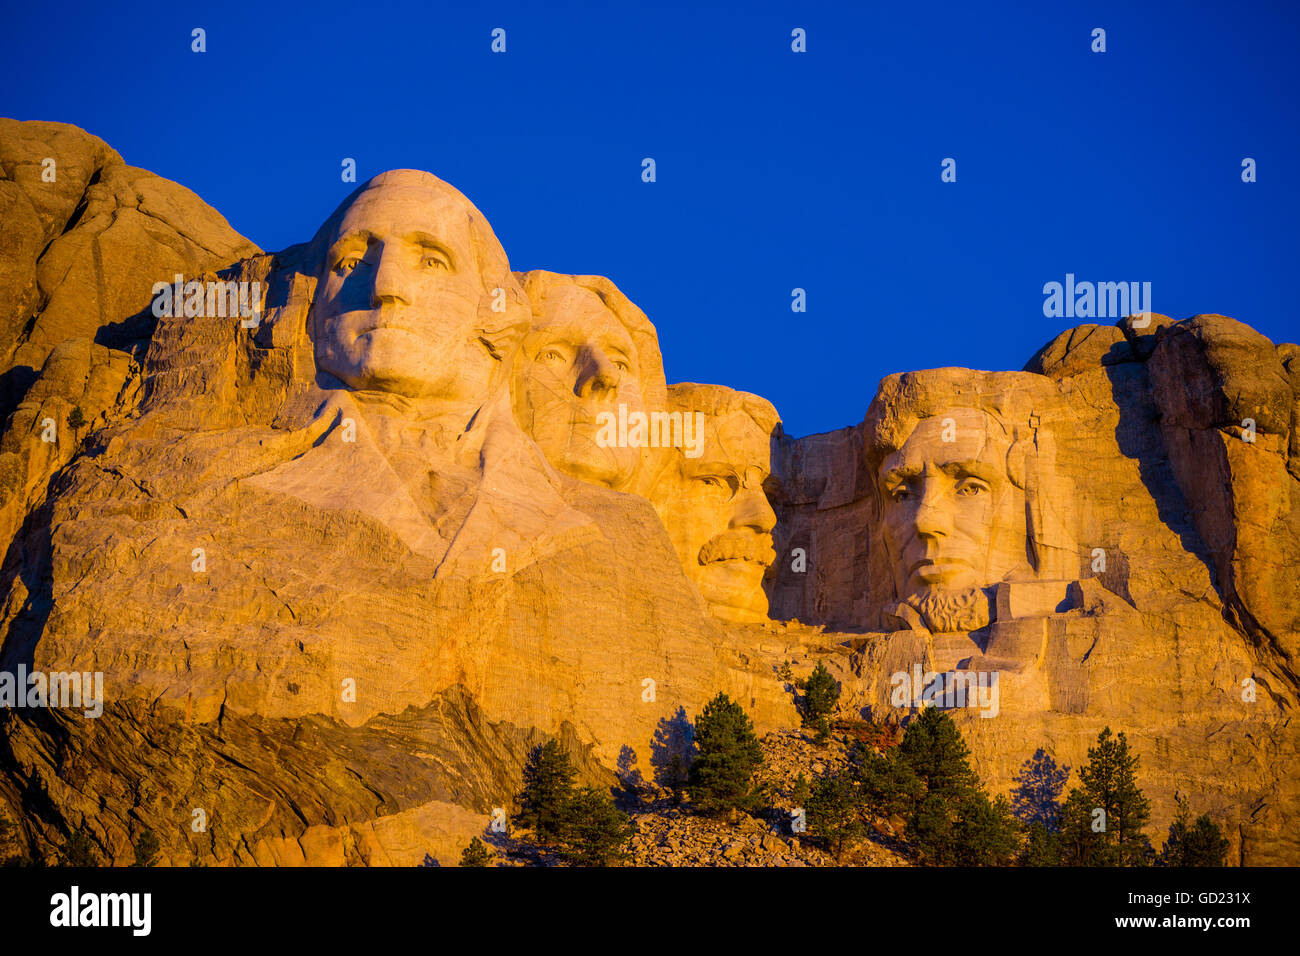 Amanecer en el Monte Rushmore, Black Hills, Dakota del Sur, Estados Unidos de América, América del Norte Foto de stock